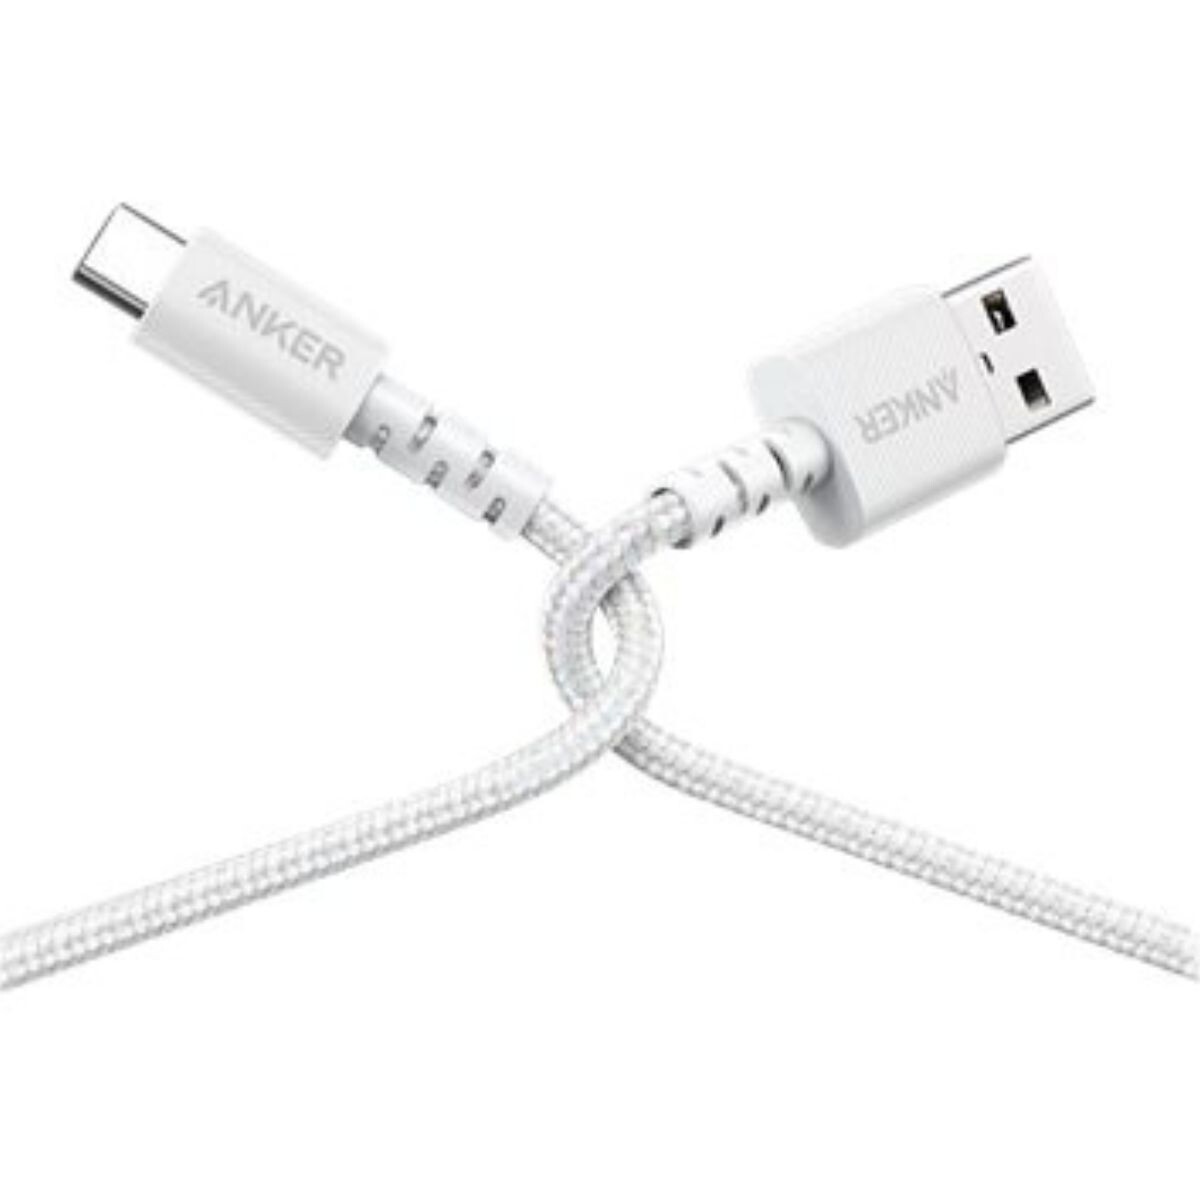 Cable Anker USB-C a USB-A 